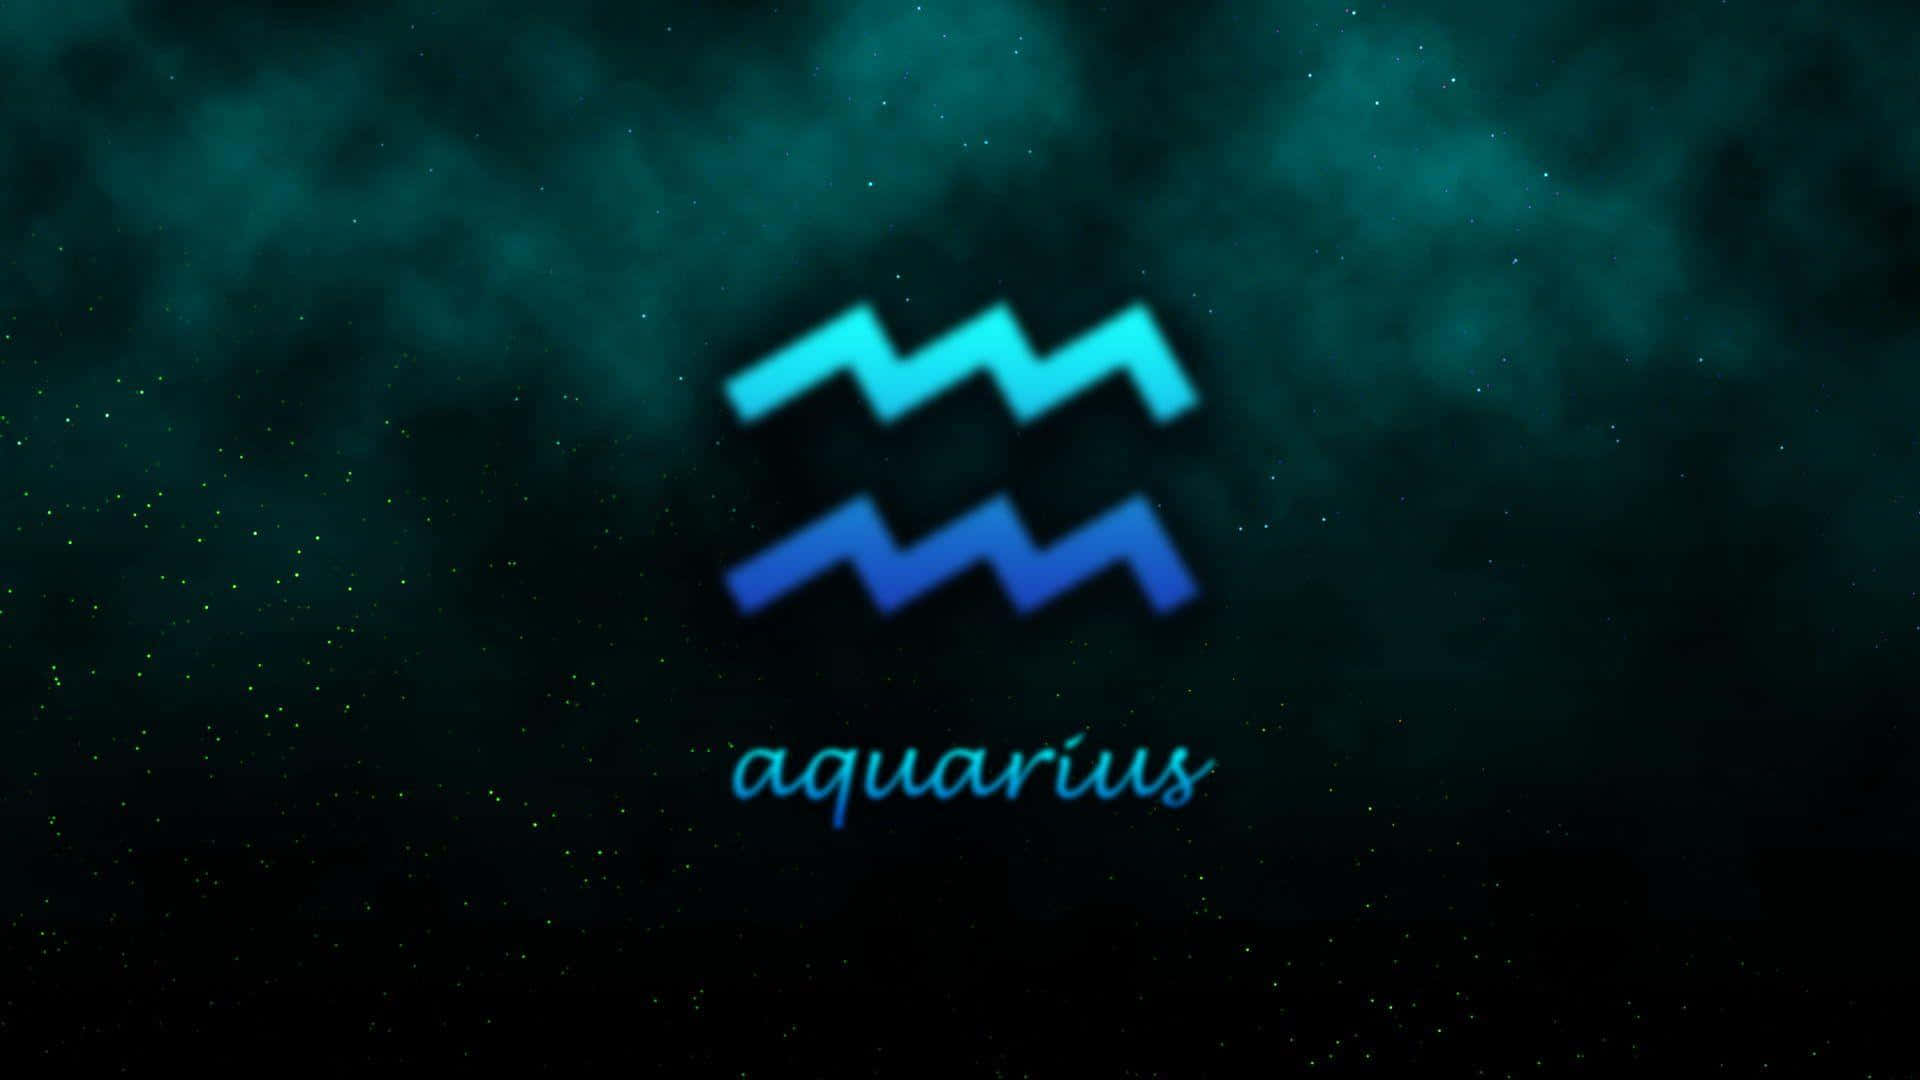 Alluring Aquarius